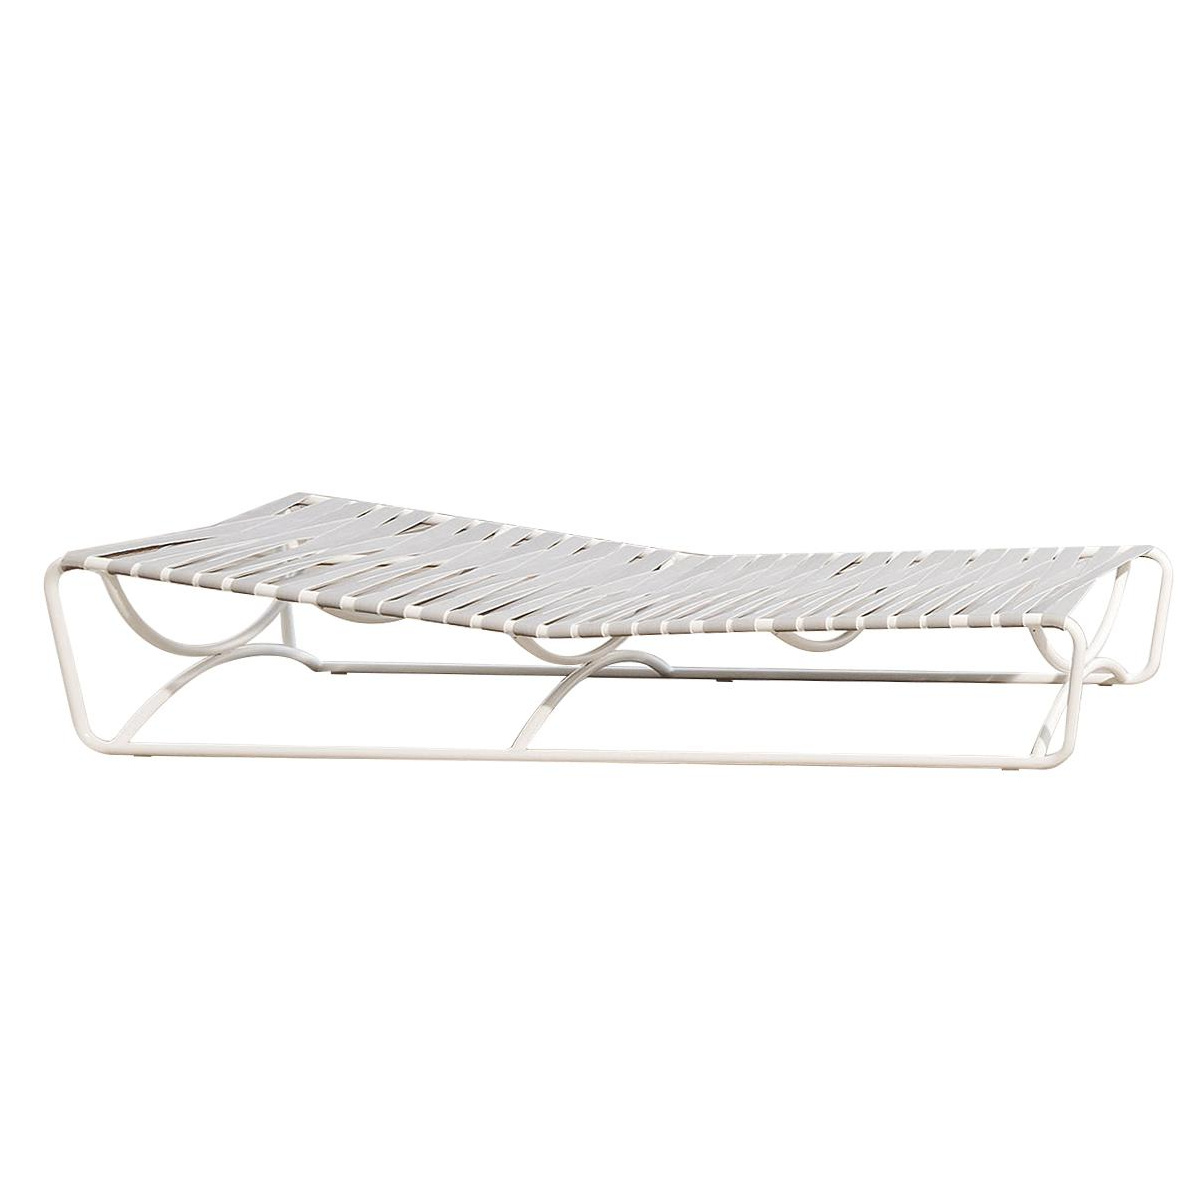 Gervasoni - Inout 884 Sonnenliege - weiß/grau/Sitzfläche aus elastischen Gurten/Gestell Aluminium weiß lackiert/LxBxH 208x77x41cm von Gervasoni